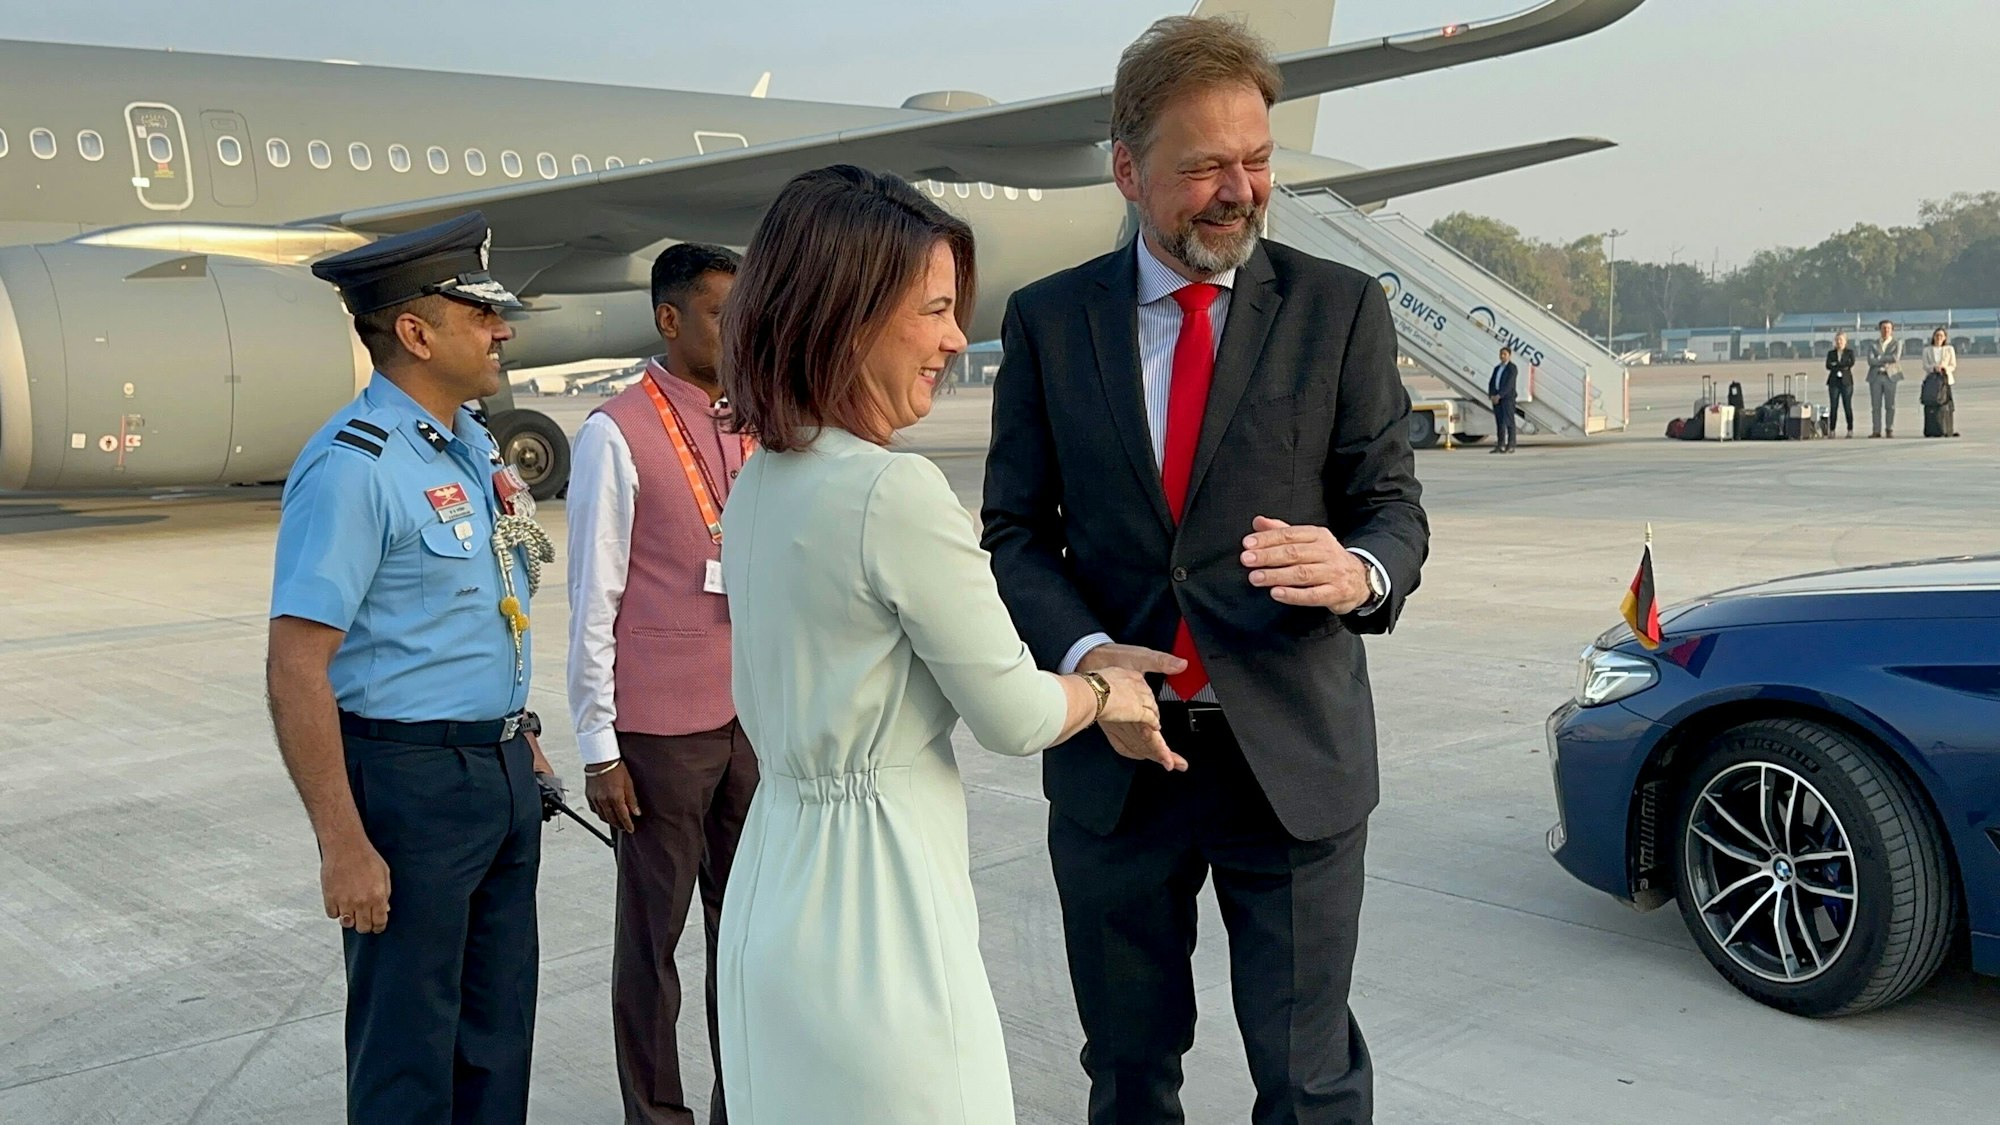 Annalena Baerbock und Philipp Ackermann stehen zusammen am Flughafen vor einem Flugzeug und geben sich die Hand.